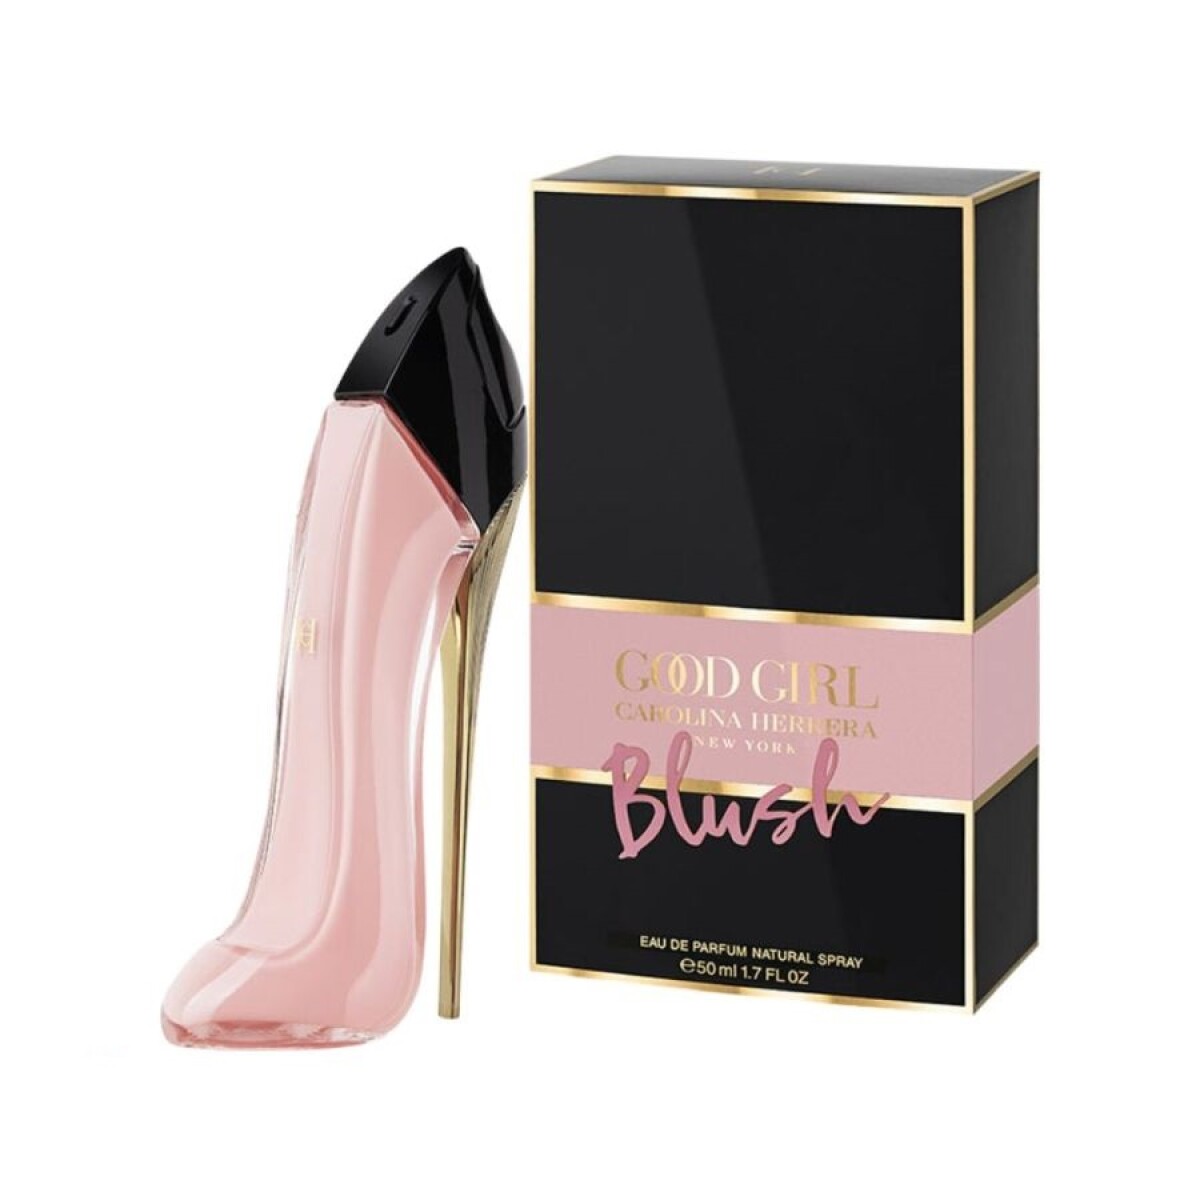 Perfume Carolina Herrera Good Girl Blush Edp 50ml. 